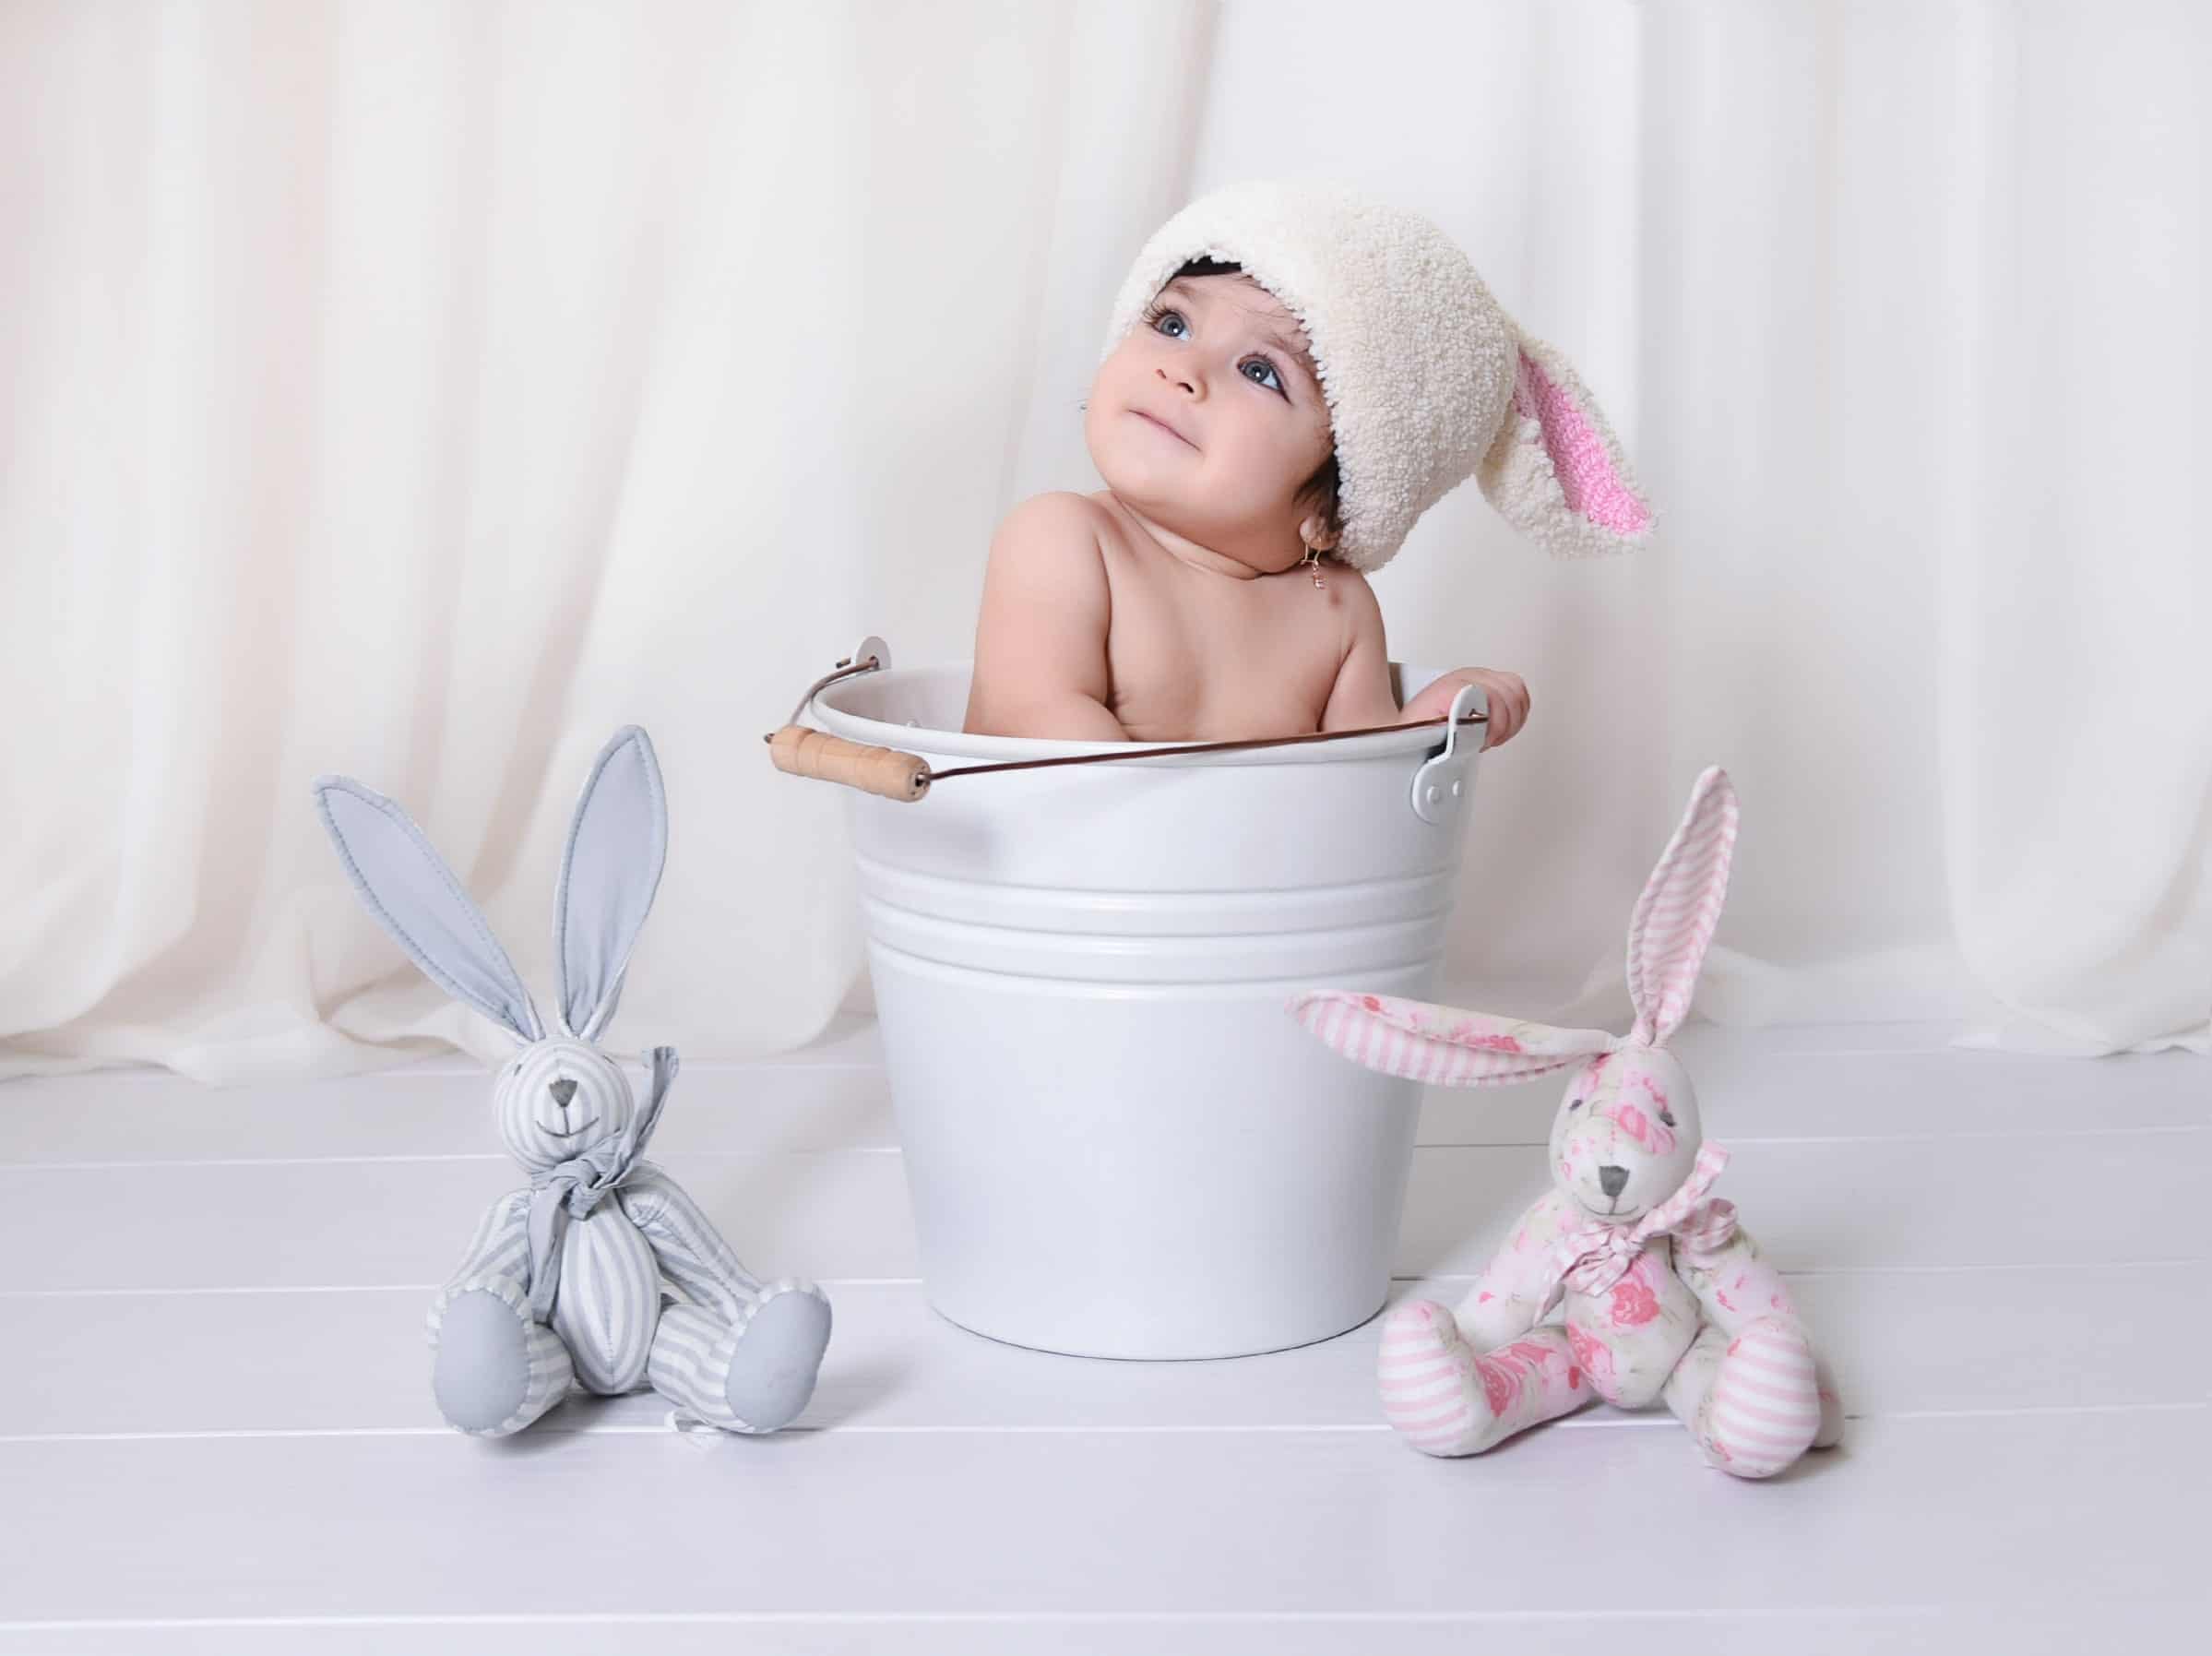 عکس کودک دختر با عروسک های خرگوش در آتلیه